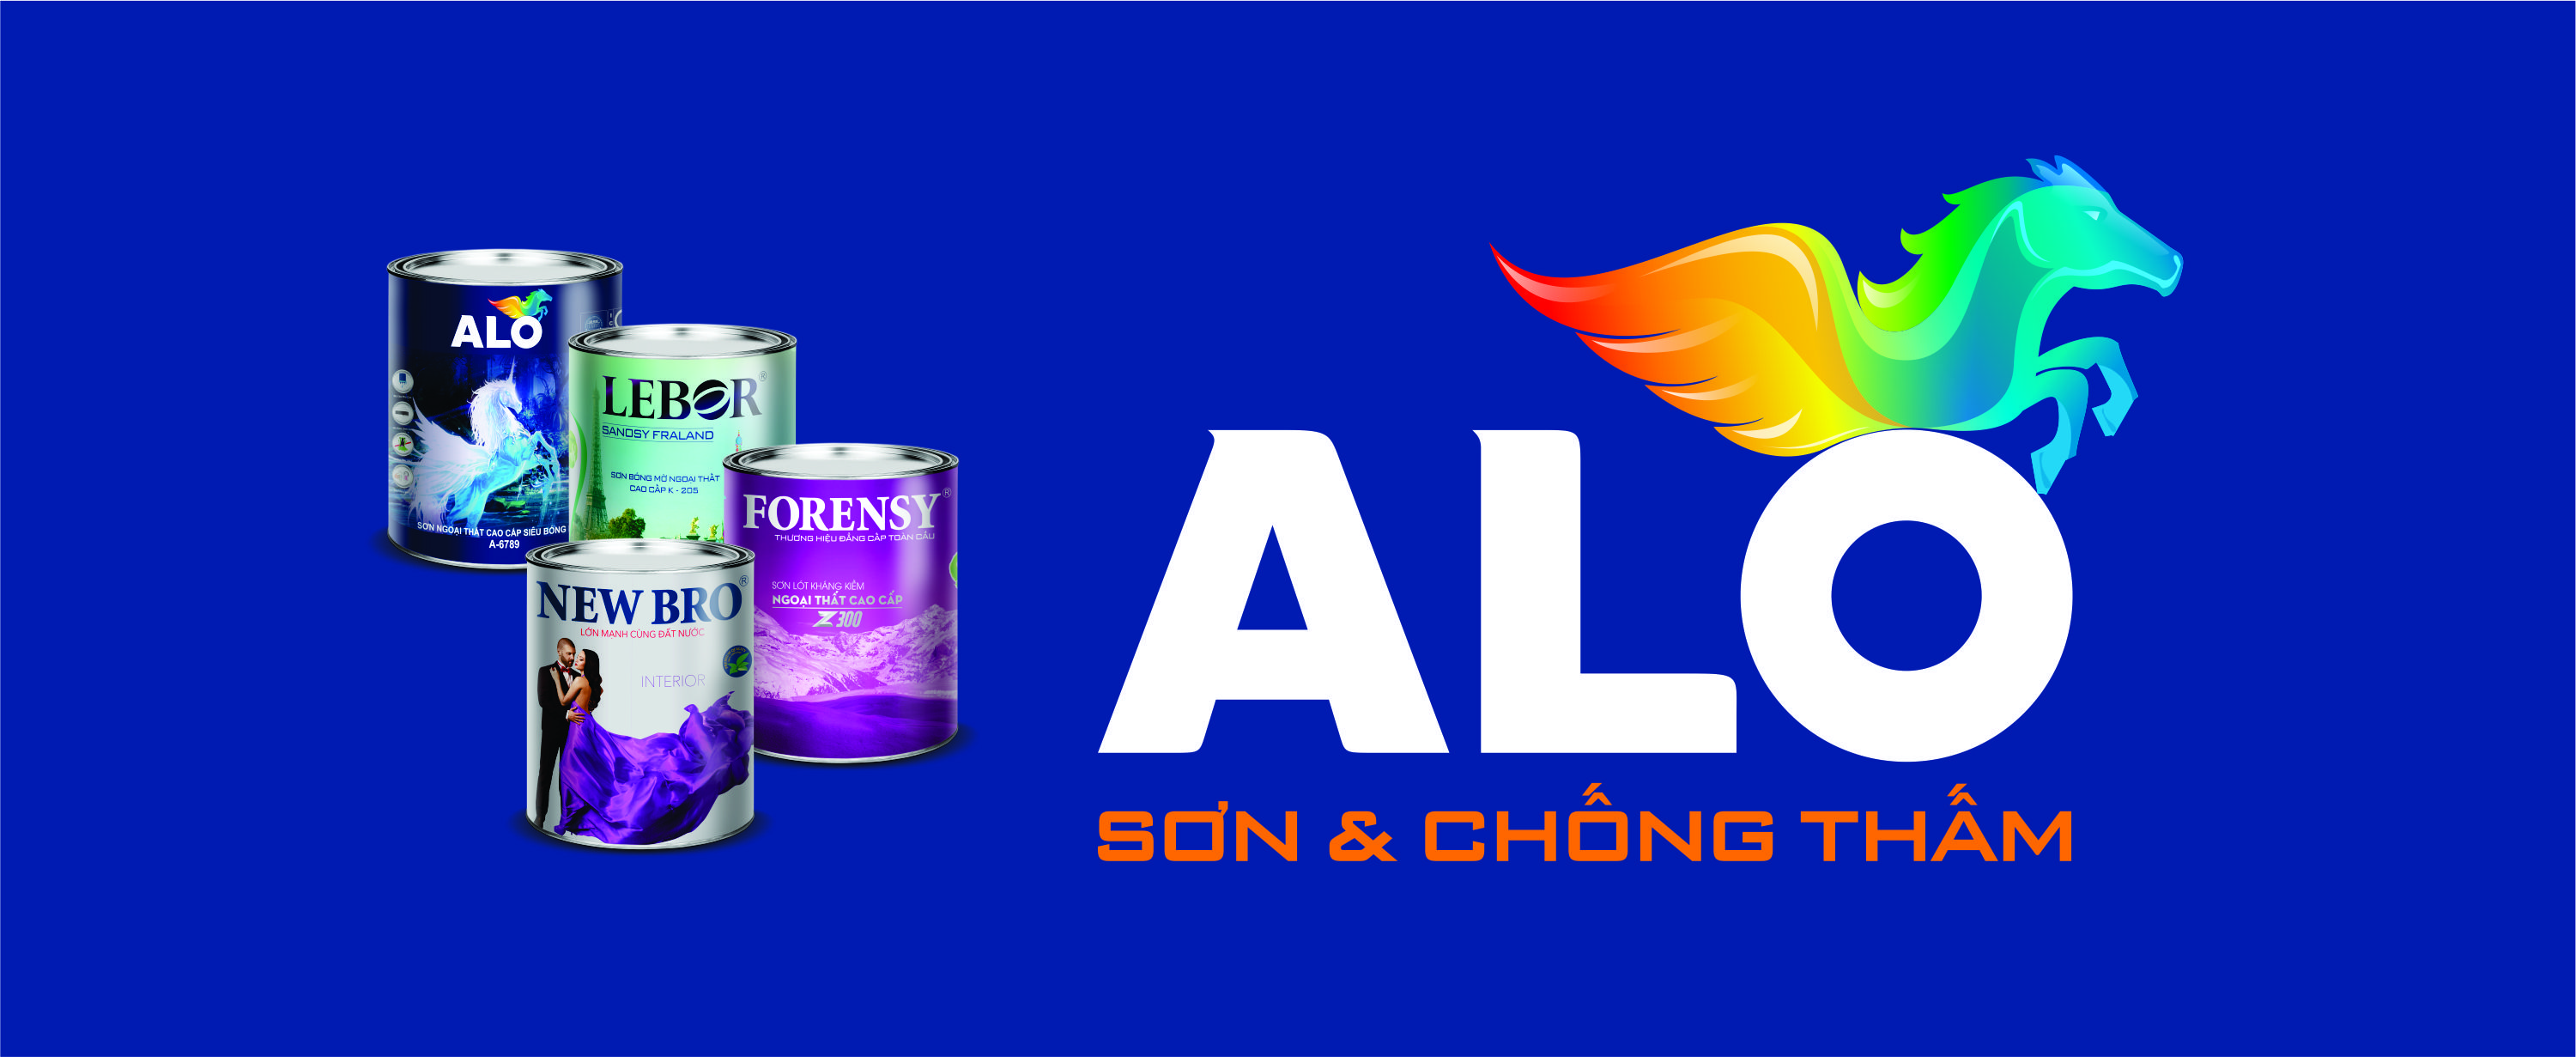 Tập đoàn ALO VIỆT NAM: Với tầm nhìn xa và định hướng phát triển bền vững, tập đoàn ALO Việt Nam khẳng định vị thế của mình trong làng kinh tế đất nước. Bao gồm nhiều công ty thành viên hoạt động trong nhiều lĩnh vực khác nhau, chúng tôi cam kết mang đến giá trị tốt nhất cho khách hàng.